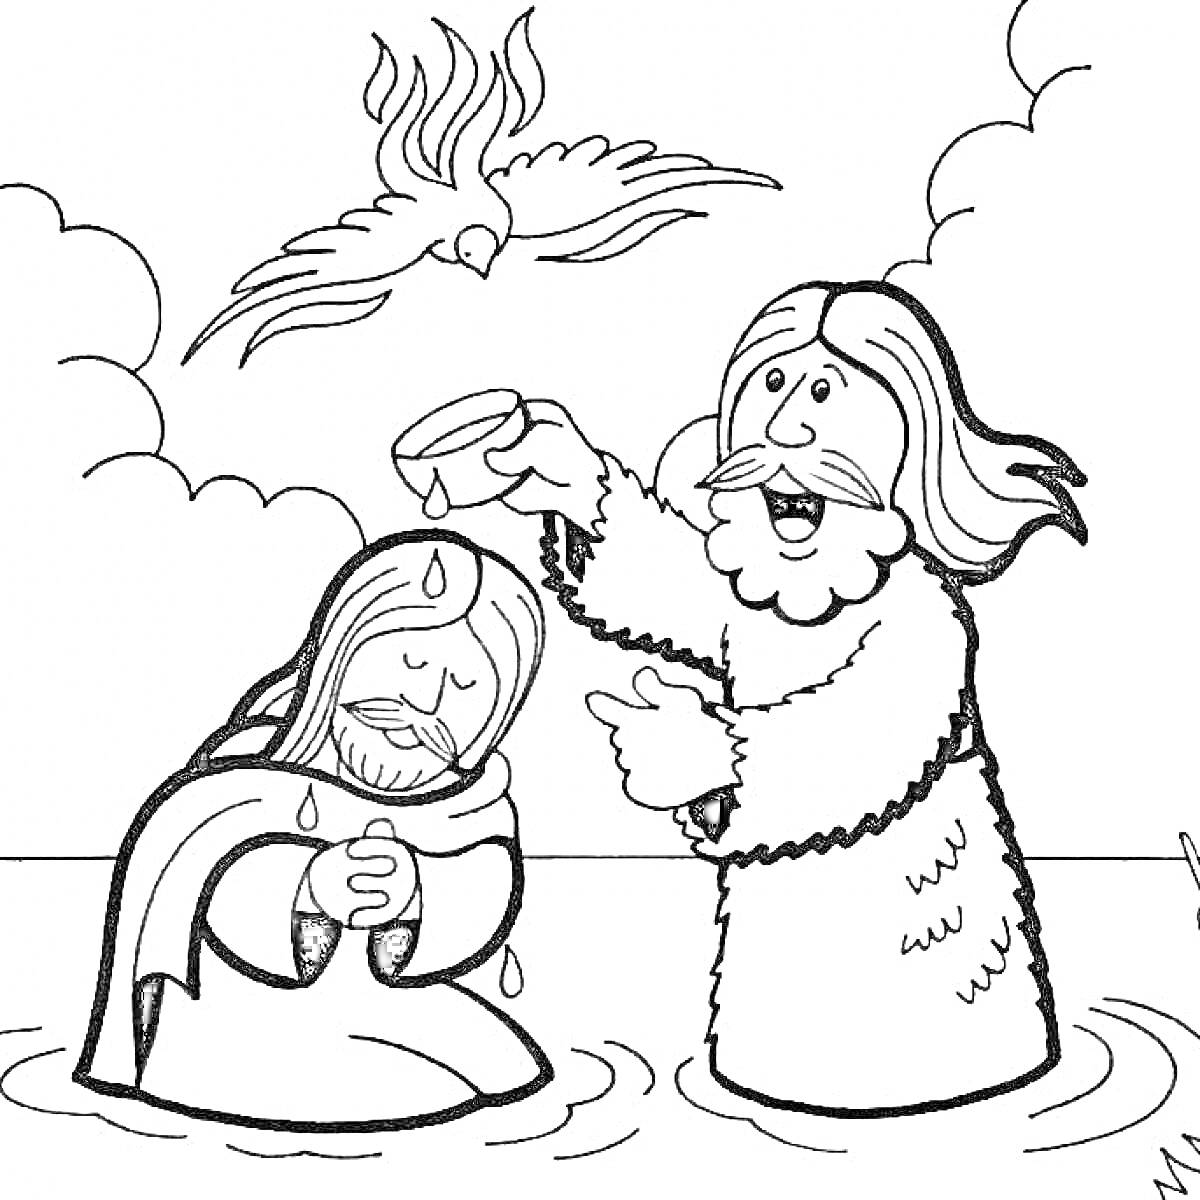 Крещение Иисуса, изображение с Иоанном Крестителем, Иисусом и голубем, символизирующим Святого Духа. Иоанн Креститель погружает Иисуса в воду.